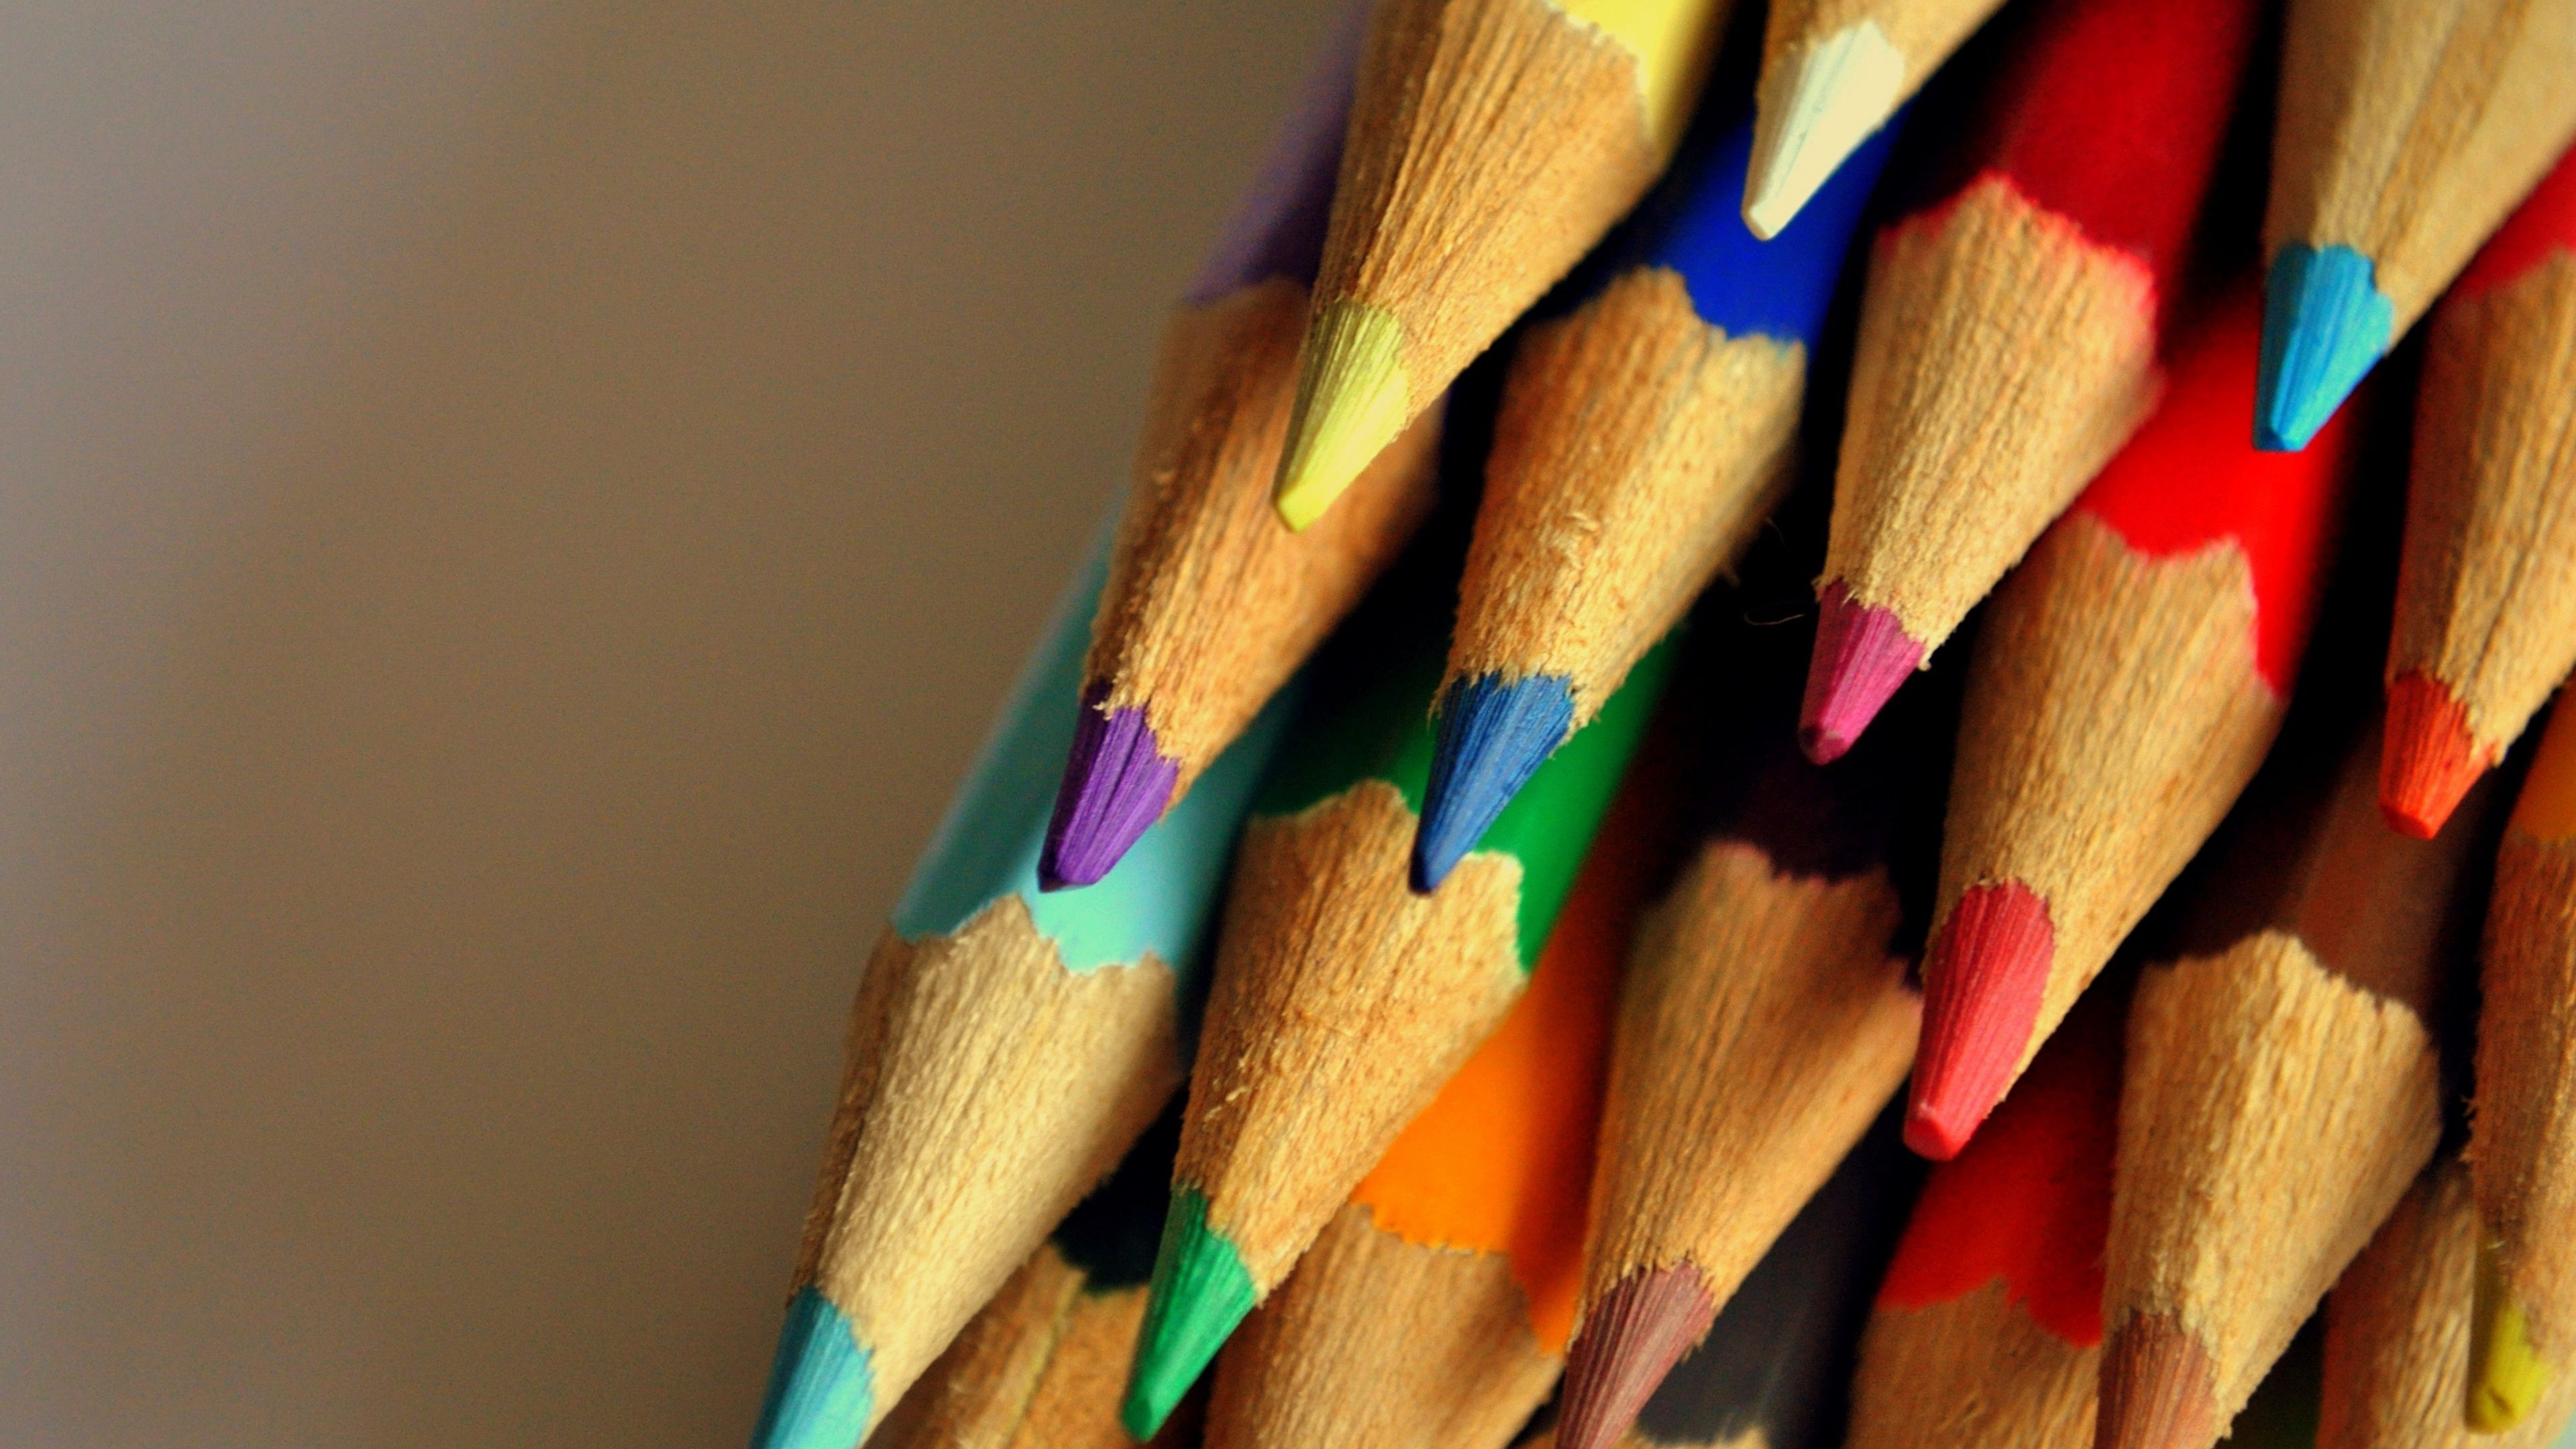 والپیپر شگفت انگیز و دیدنی از مداد رنگی های قشنگ با مارک آریا